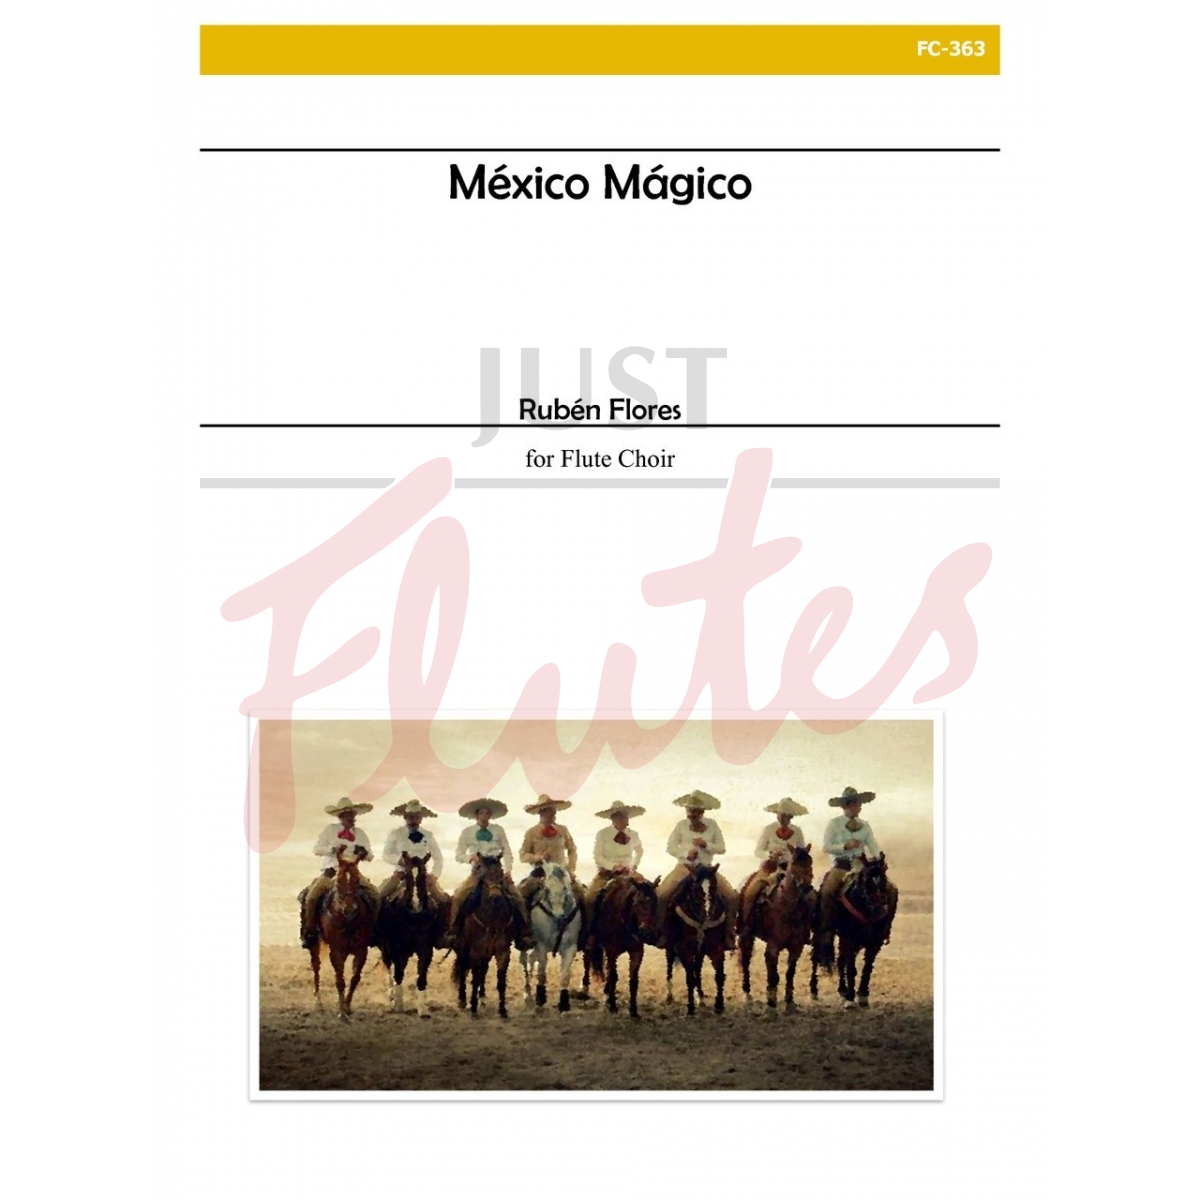 Mexico Magico [Flute Choir]